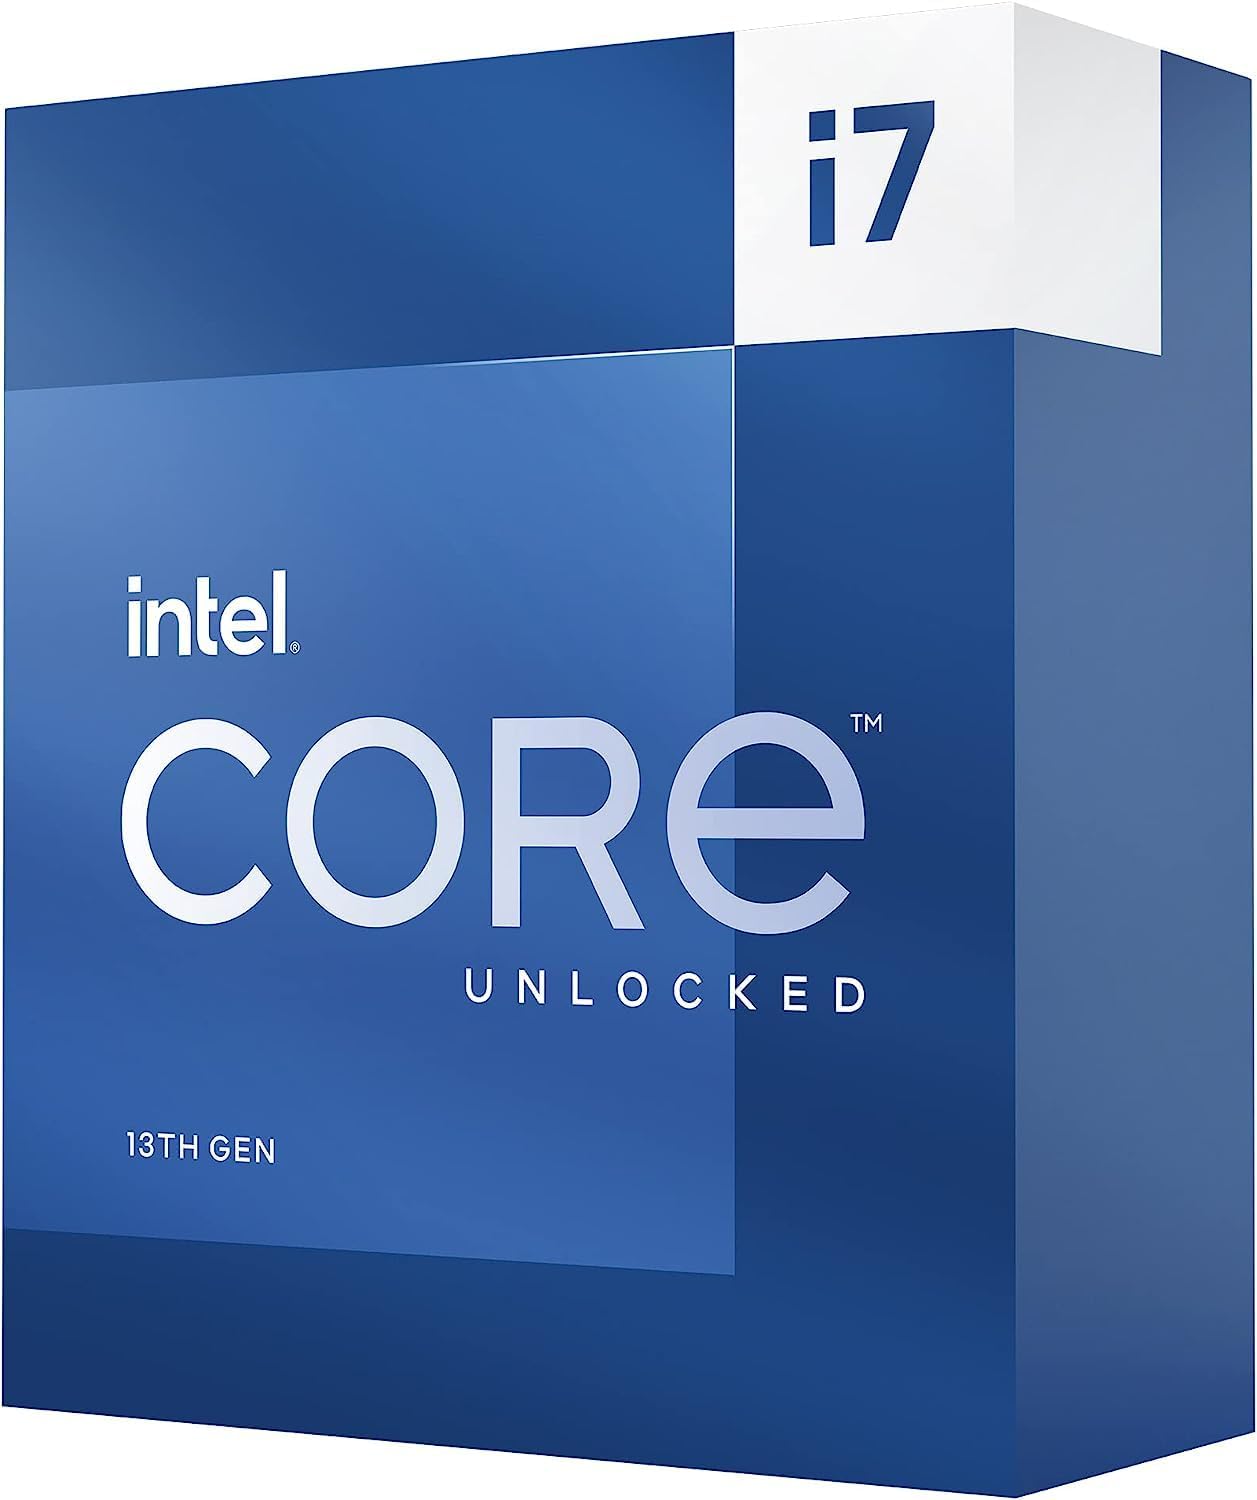 Intel Core i7-13700K (Latest Gen)